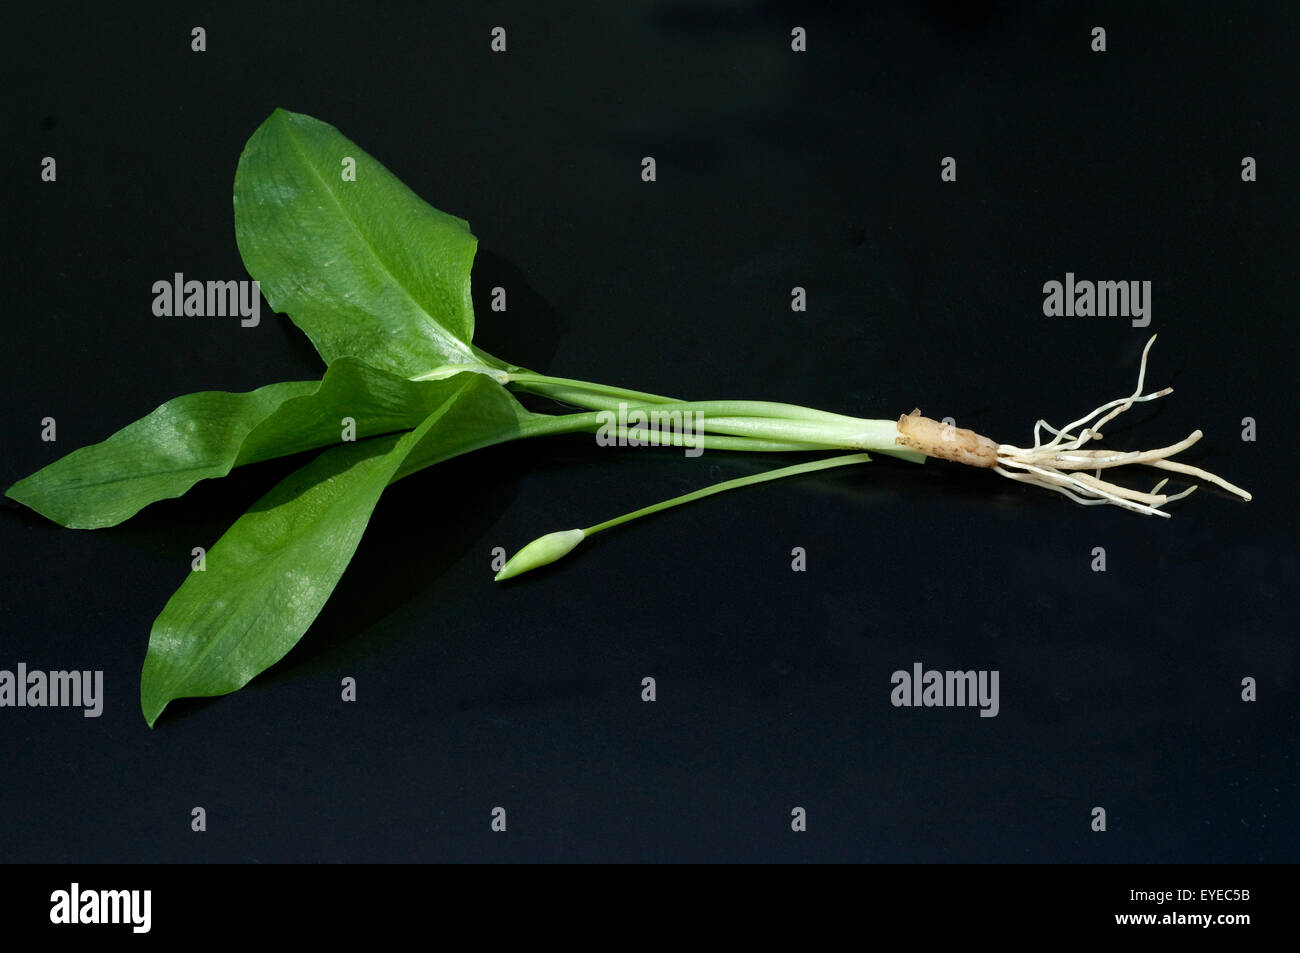 Baerlauch Allium ursinum ; ; ; Banque D'Images